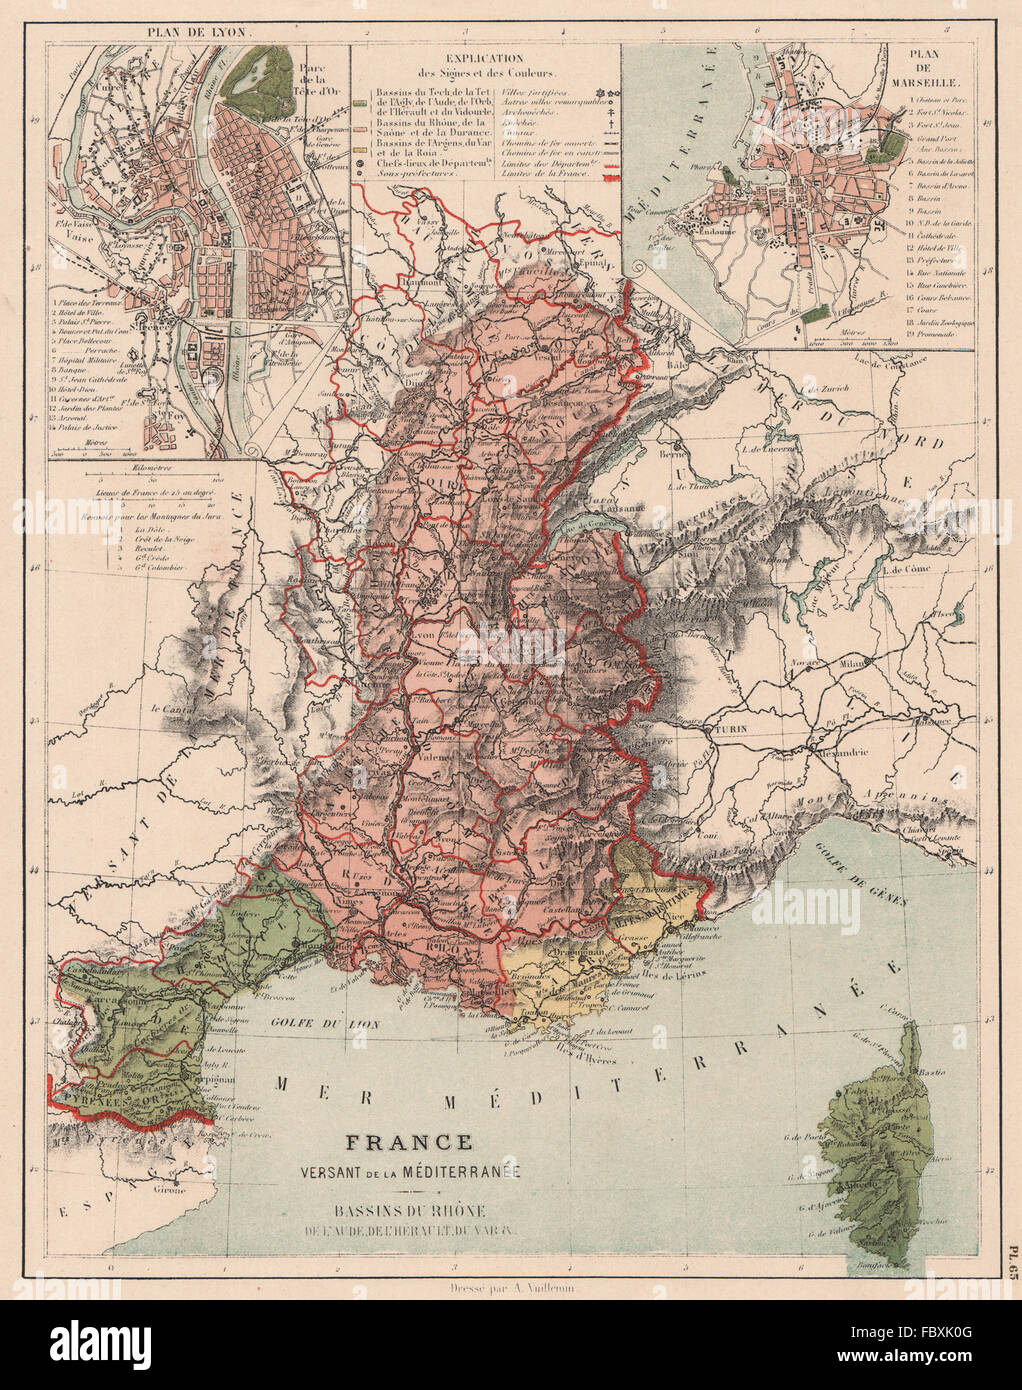 Frankreich Mittelmeer Wasserscheide Saone Rhone Var Aude Herault Becken 1880 Karte Stockfotografie Alamy